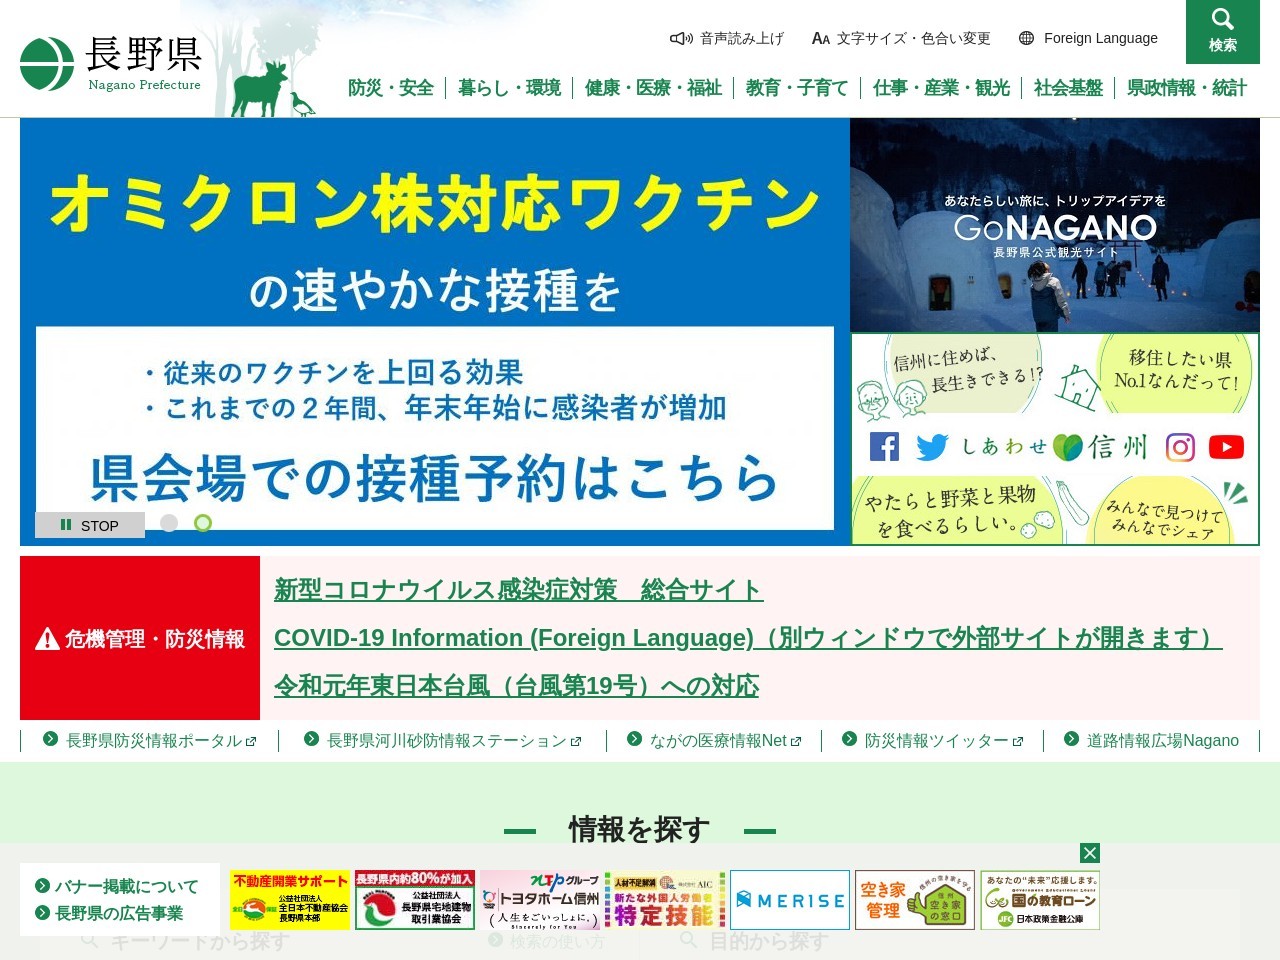 駒ヶ根警察署 中沢警察官駐在所のクチコミ・評判とホームページ